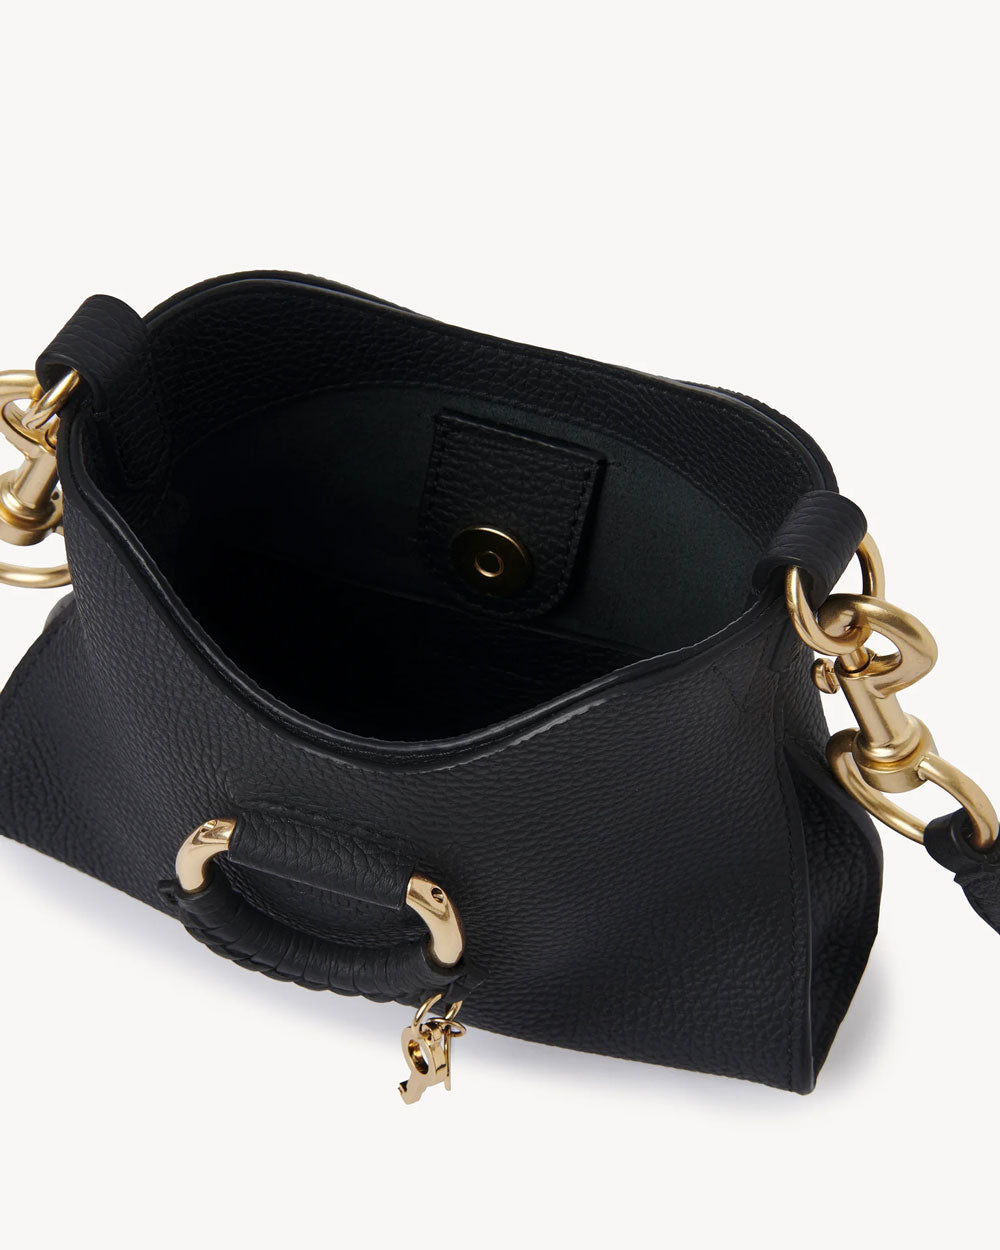 Joan Mini Top Handle Bag in Black